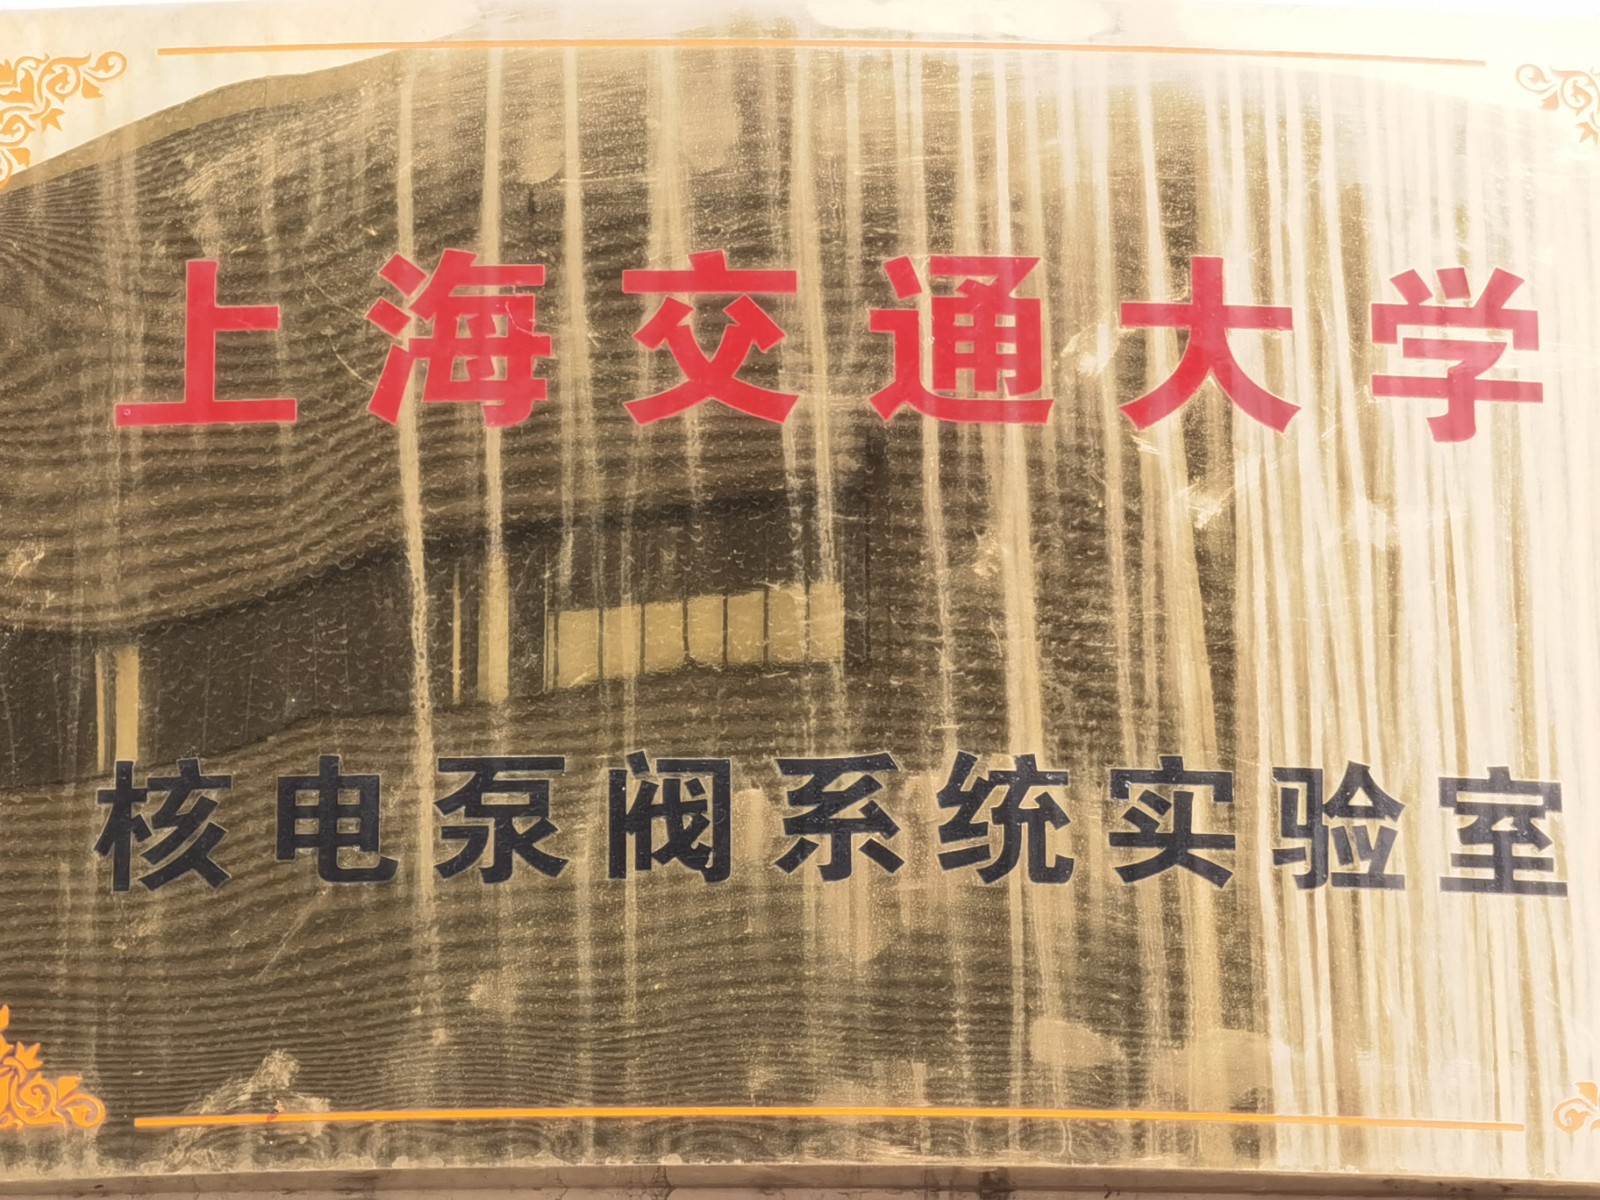 上海交通大学核电泵阀系统实验室